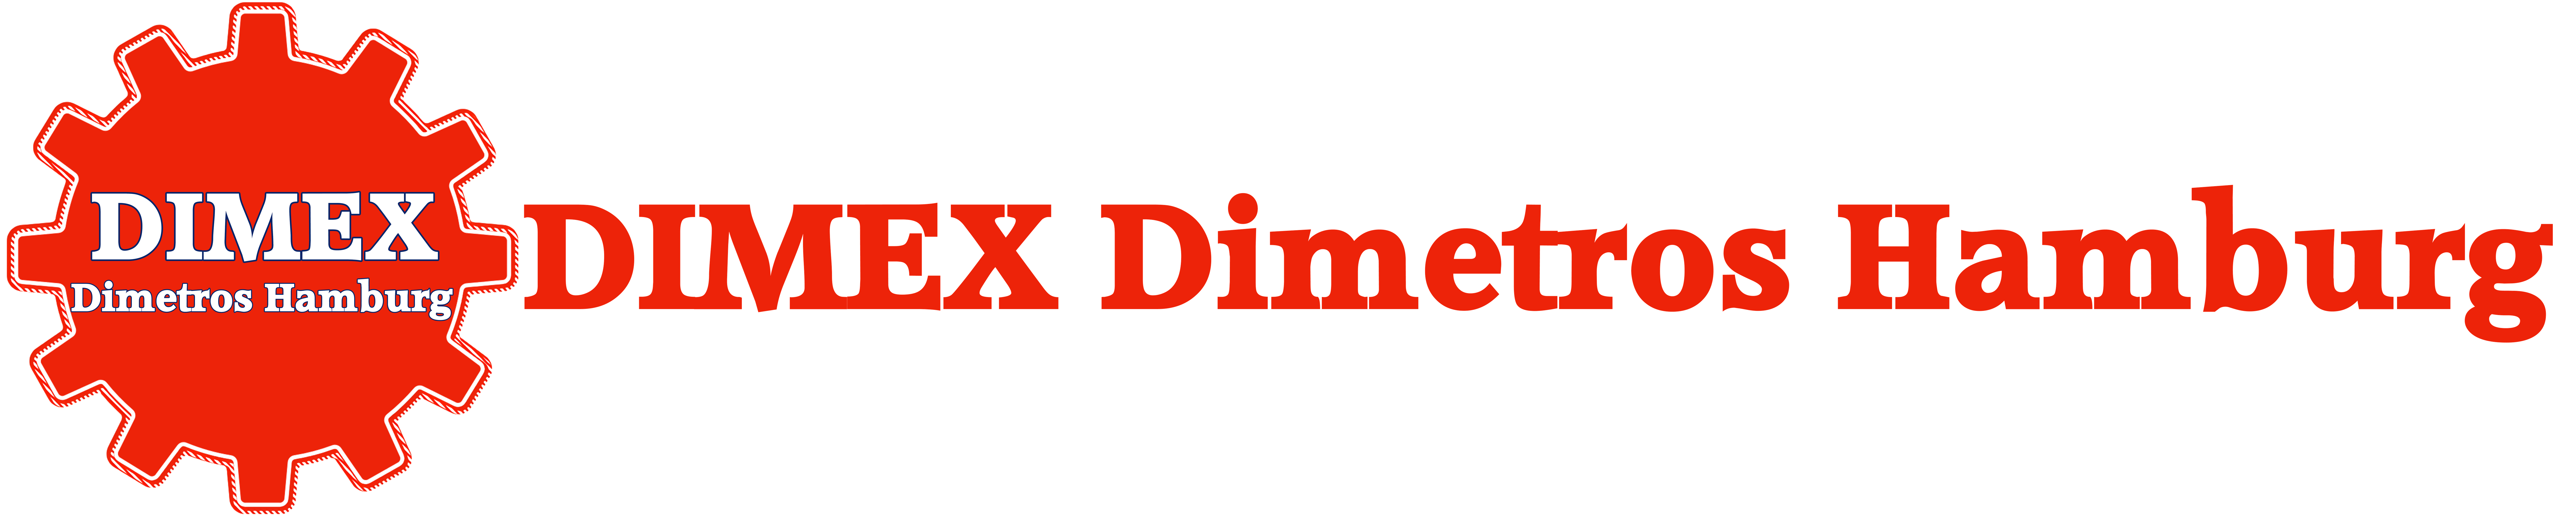 DIMEX Dimetros Hamburg